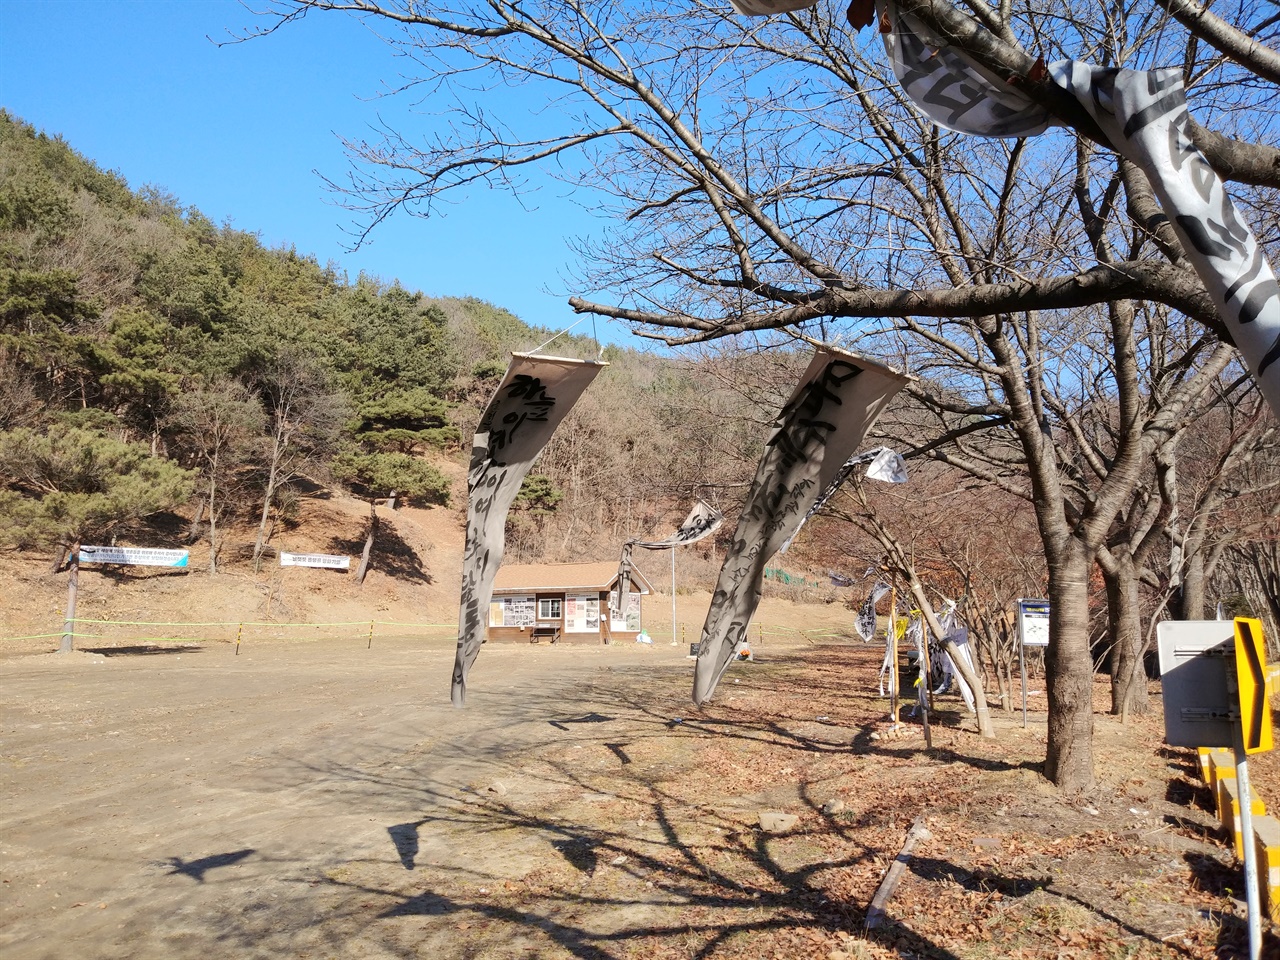 대전 산내 골령골 학살터 풍경. 주변 나뭇가지에 내건 만장과 현수막 펄럭이는 소리만 들리는 을씨년스러운 모습이다.